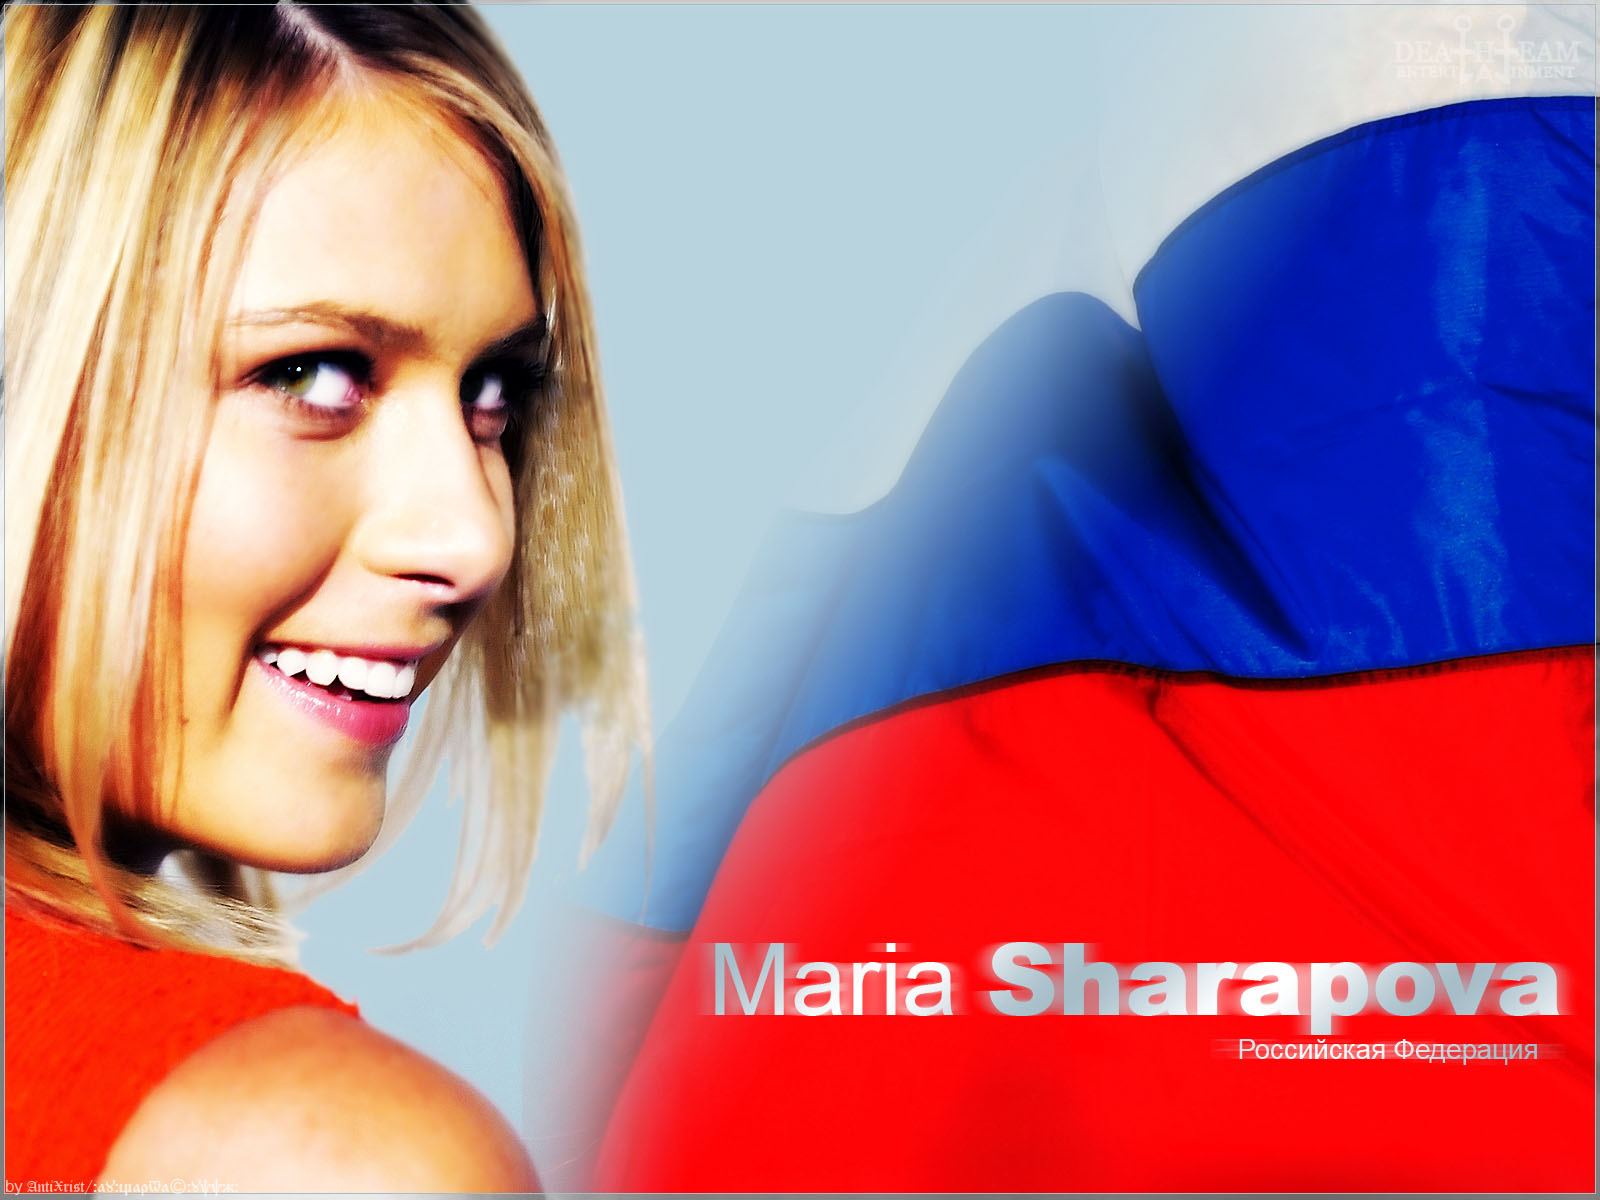 Maria Sharapova Wallpapers